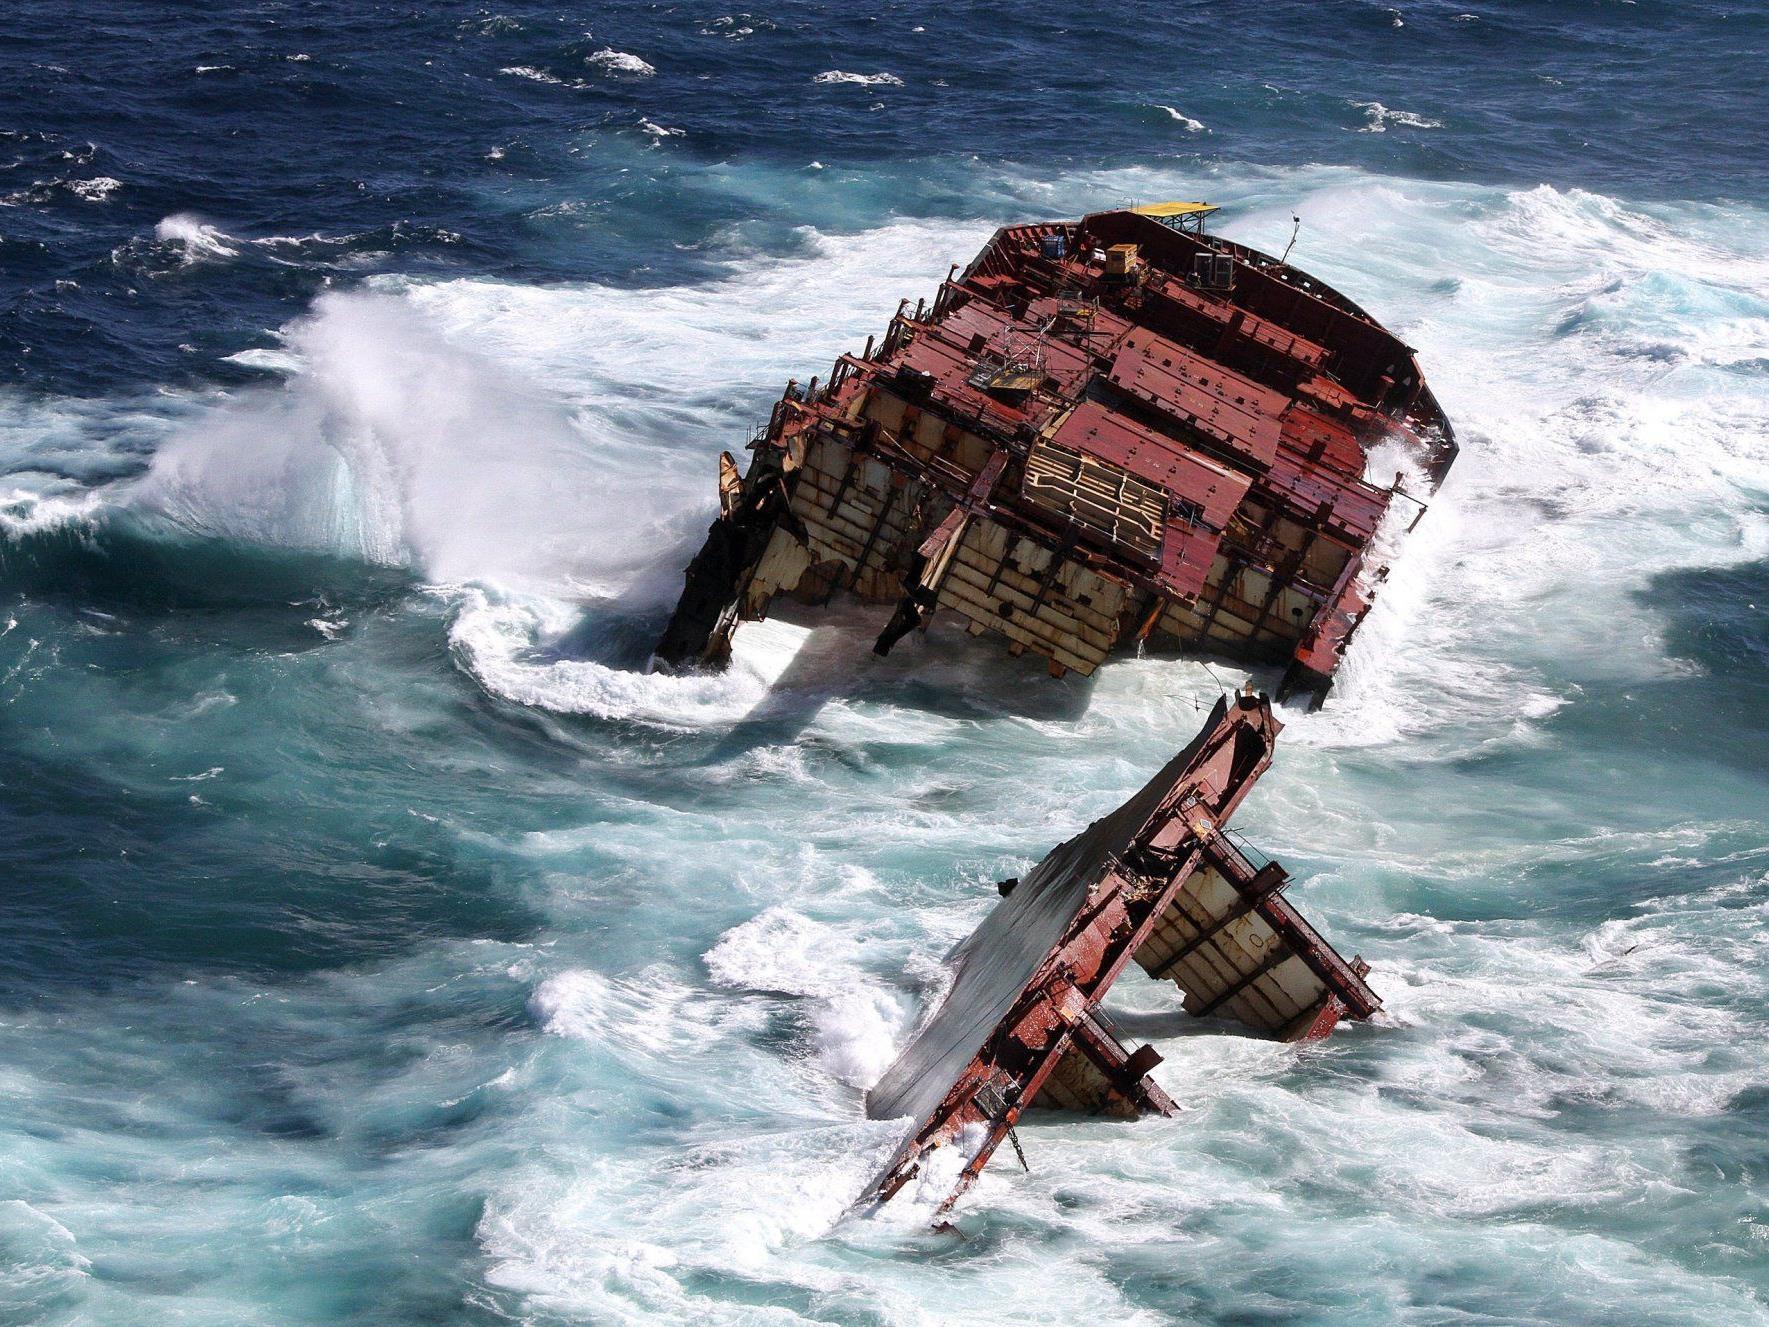 Das Containerschiff Rena lief am 5. Oktober 2011 auf ein Riff auf. Die Verantwortlichen wurden nun verurteilt.